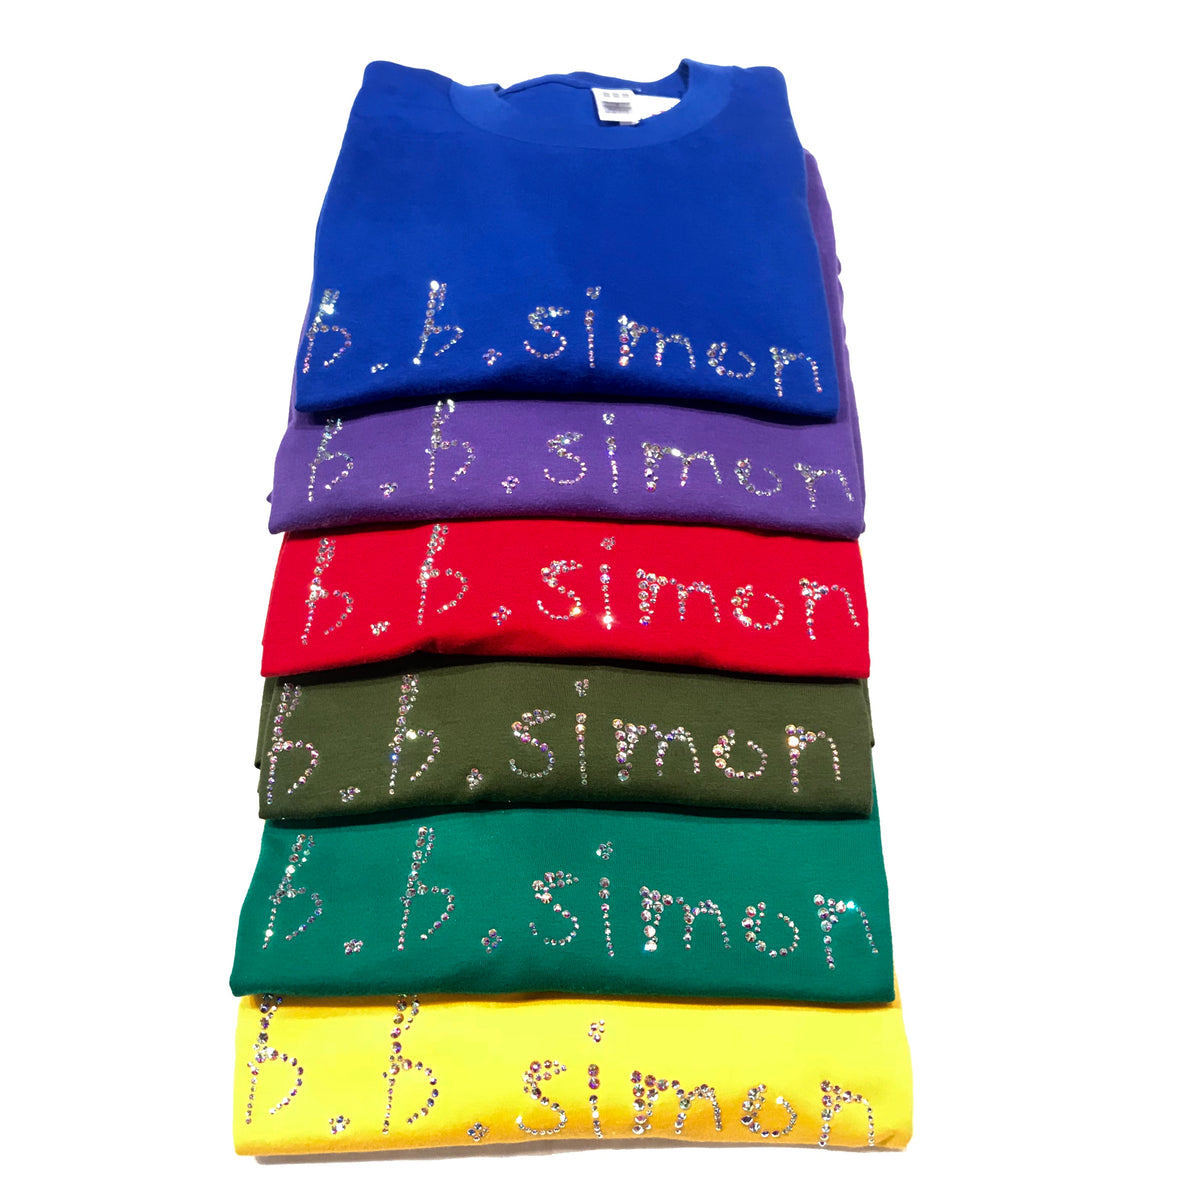 b.b. Simon Crystal Crewneck T-shirt - Dudes Boutique